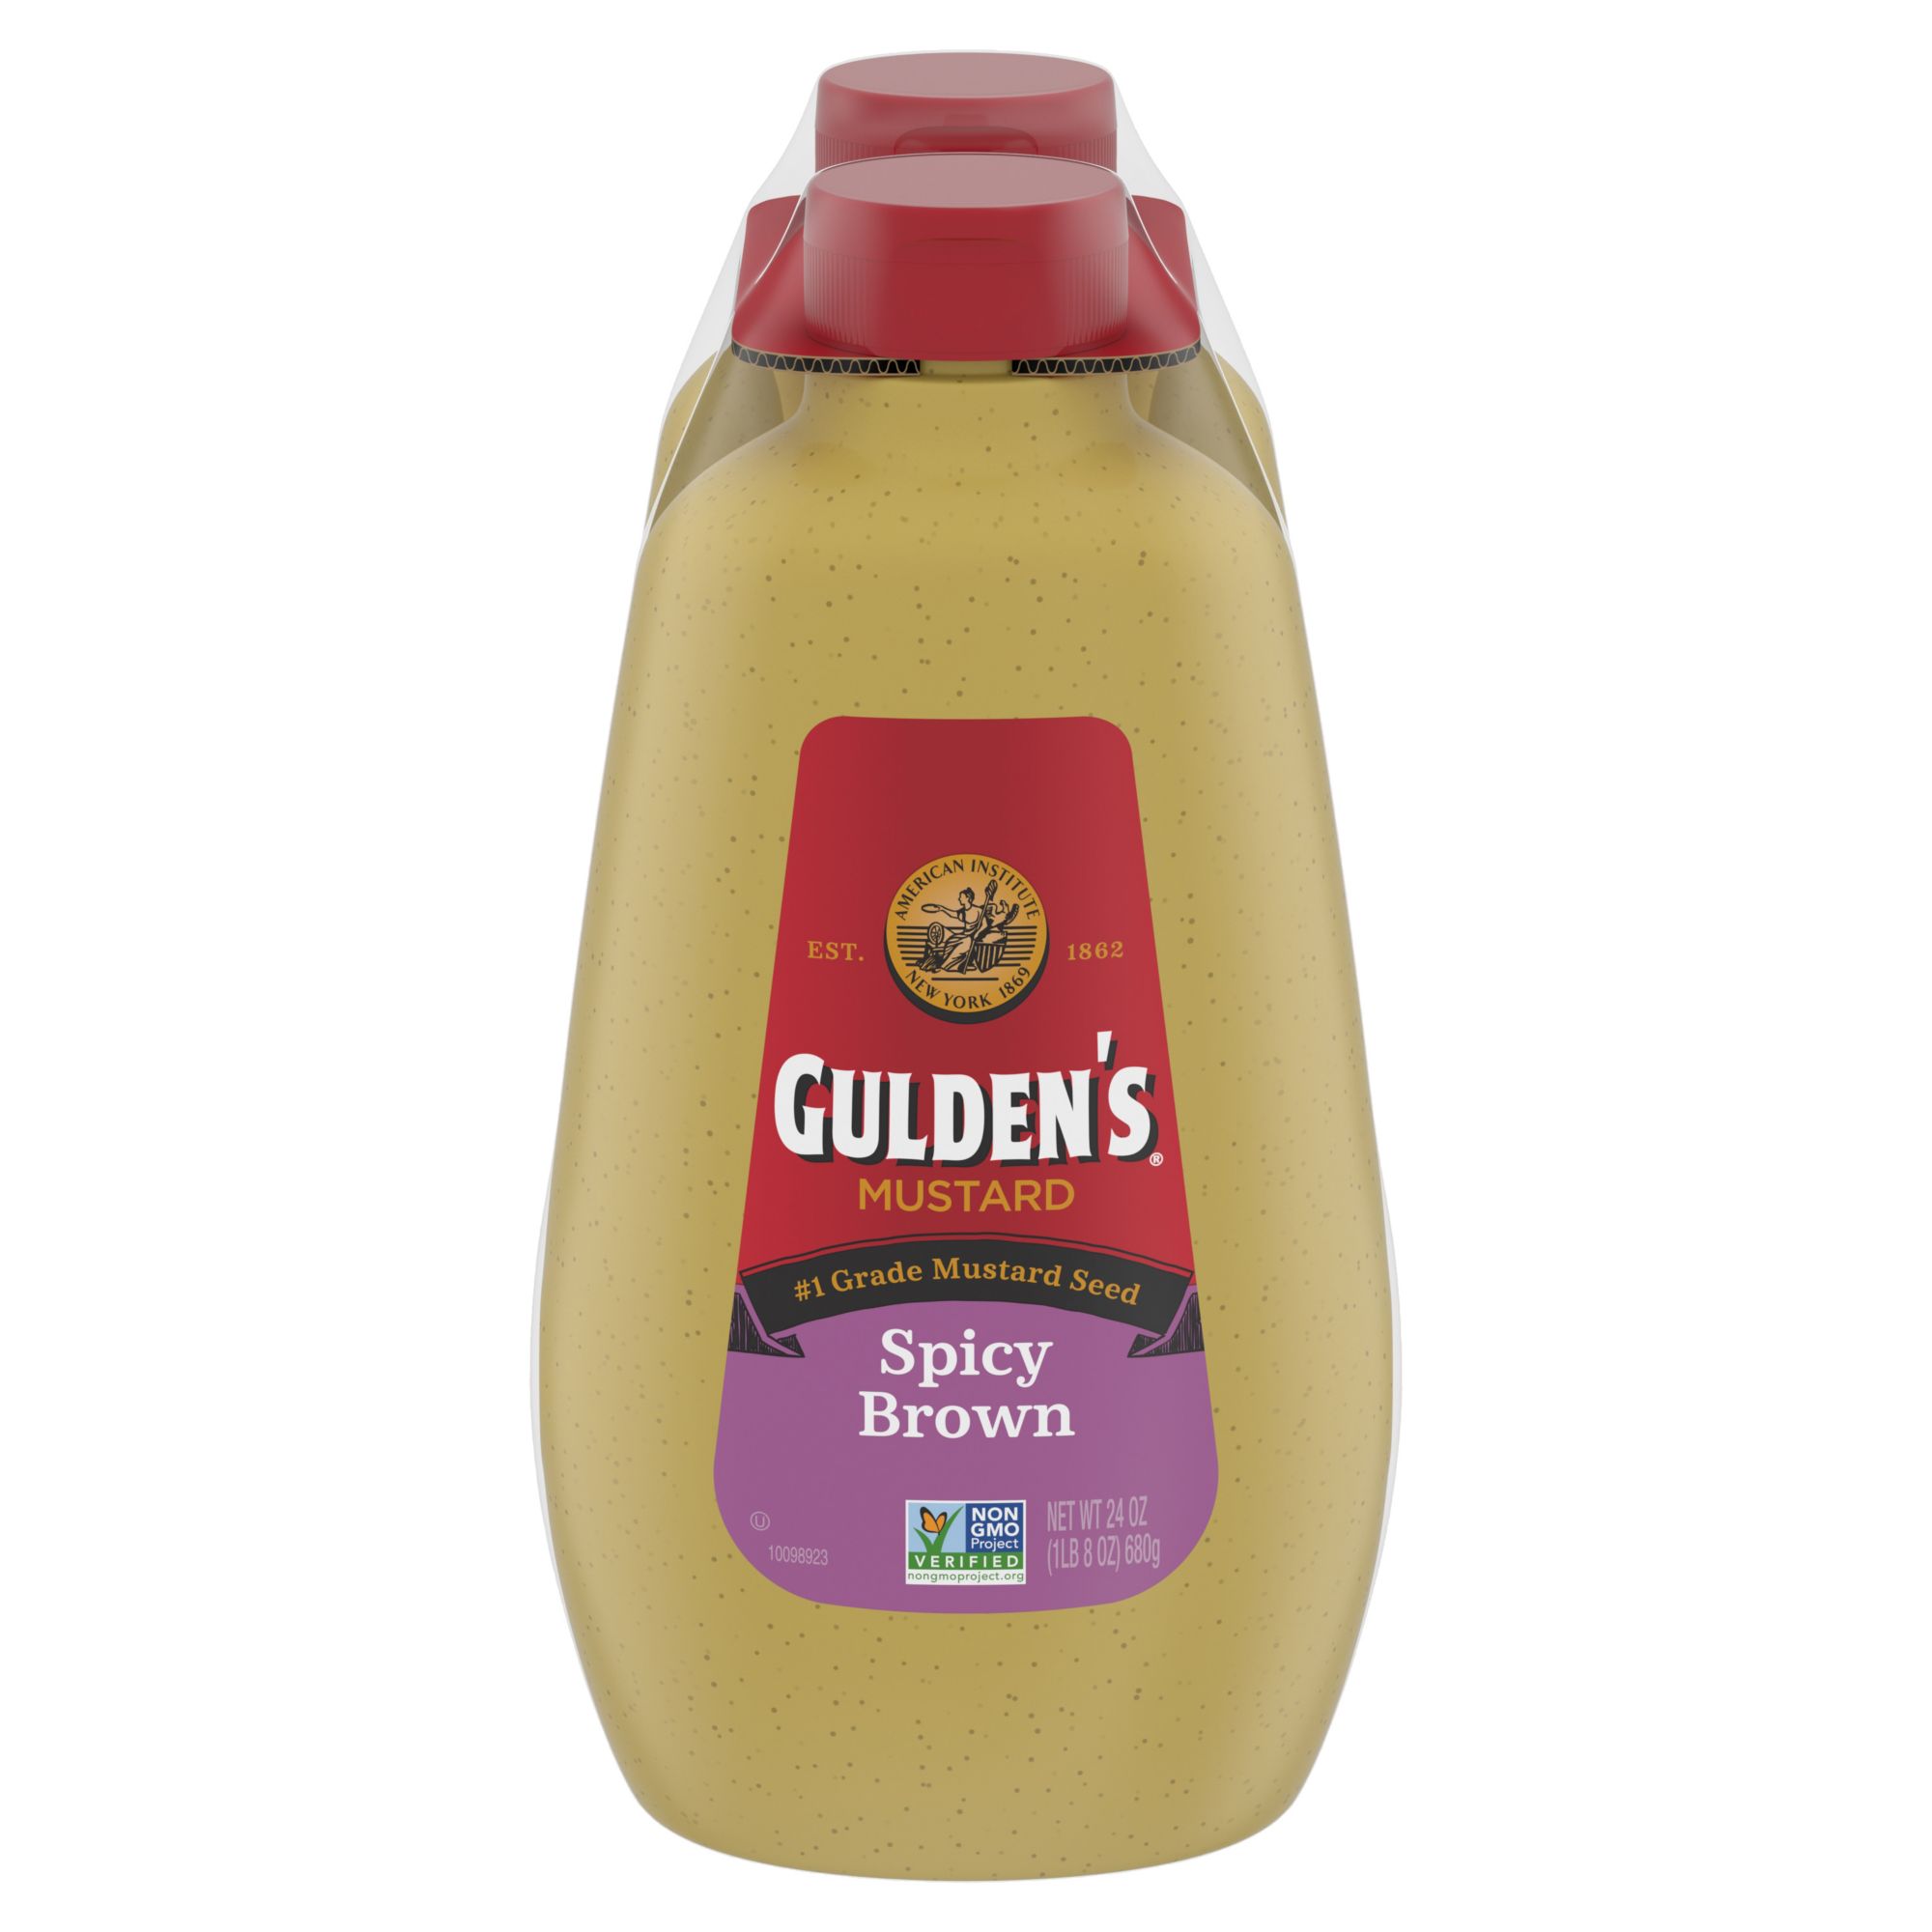 Gulden's Spicy Brown Mustard, 24 oz.Bottles, 2 ct.